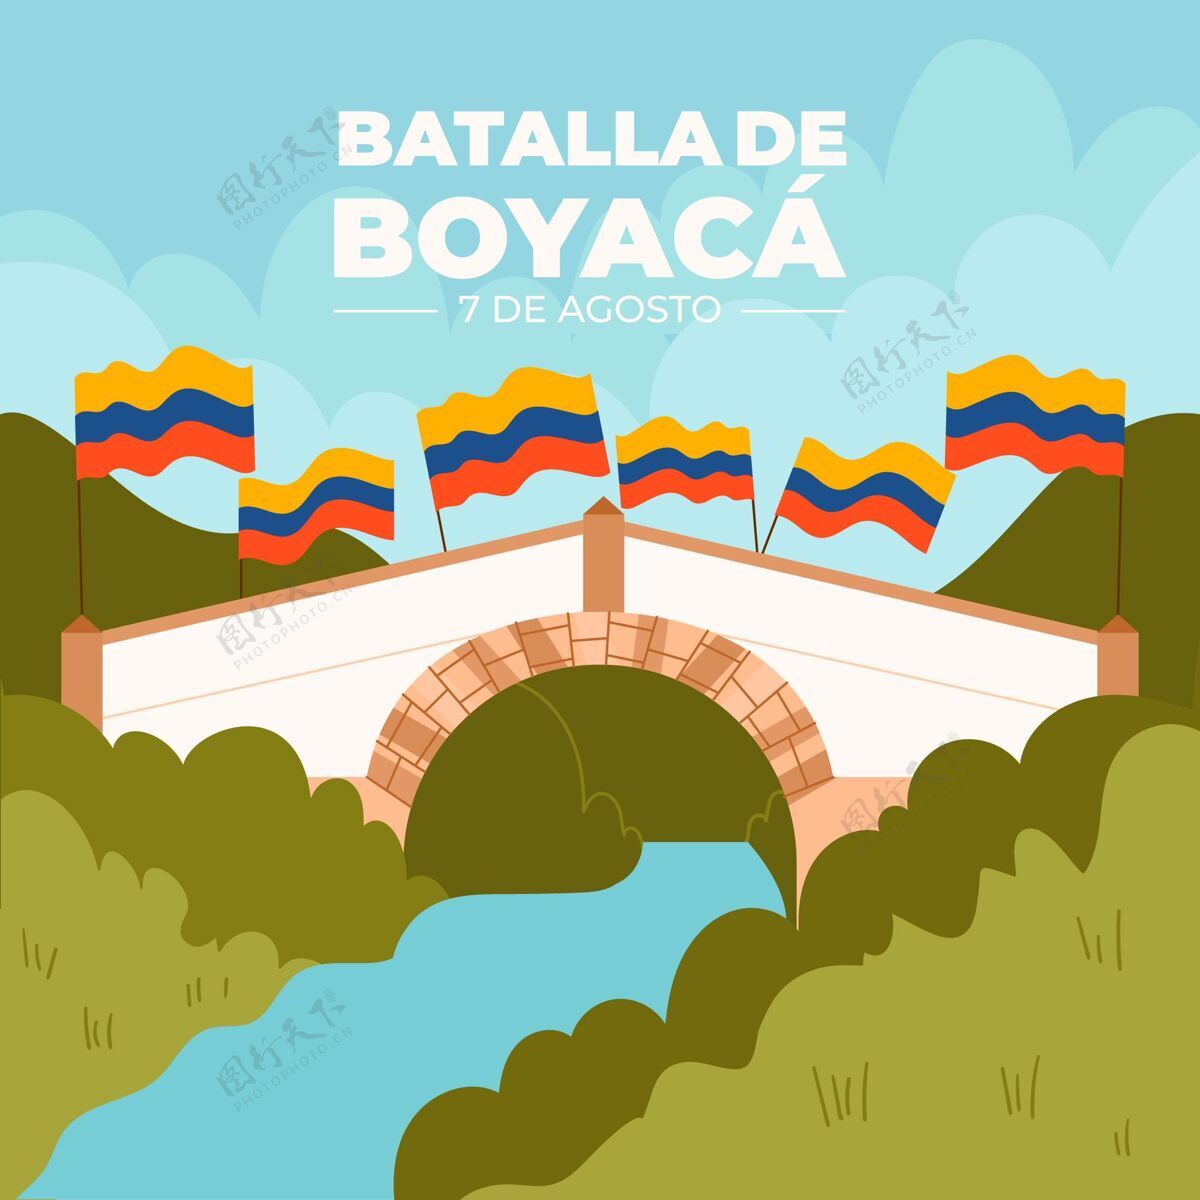 哥伦比亚人平底哥伦比亚巴塔拉德博亚卡插图桥梁自由独立